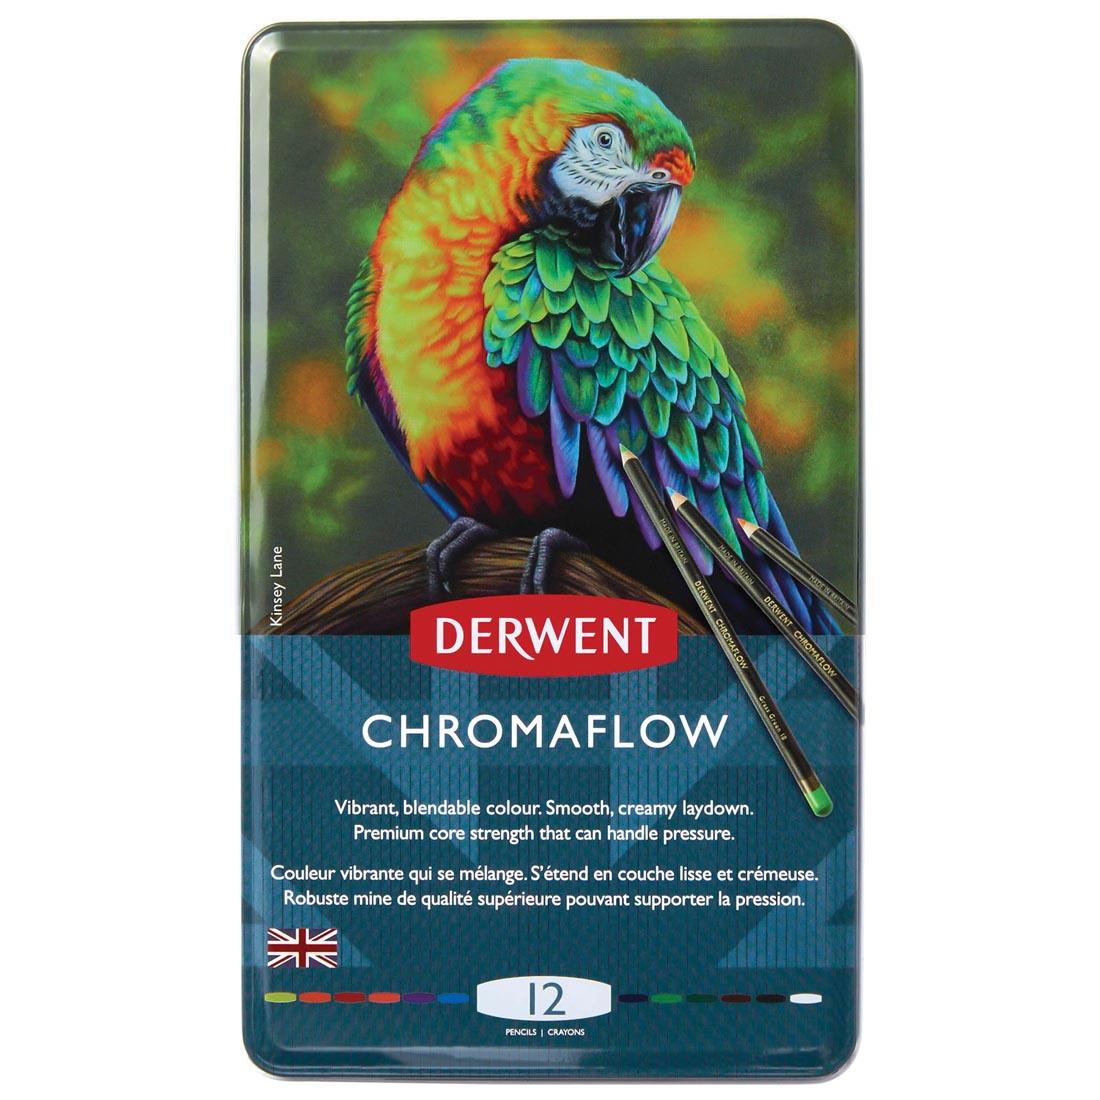 Derwent Chromaflow Pencils 12-Color Set